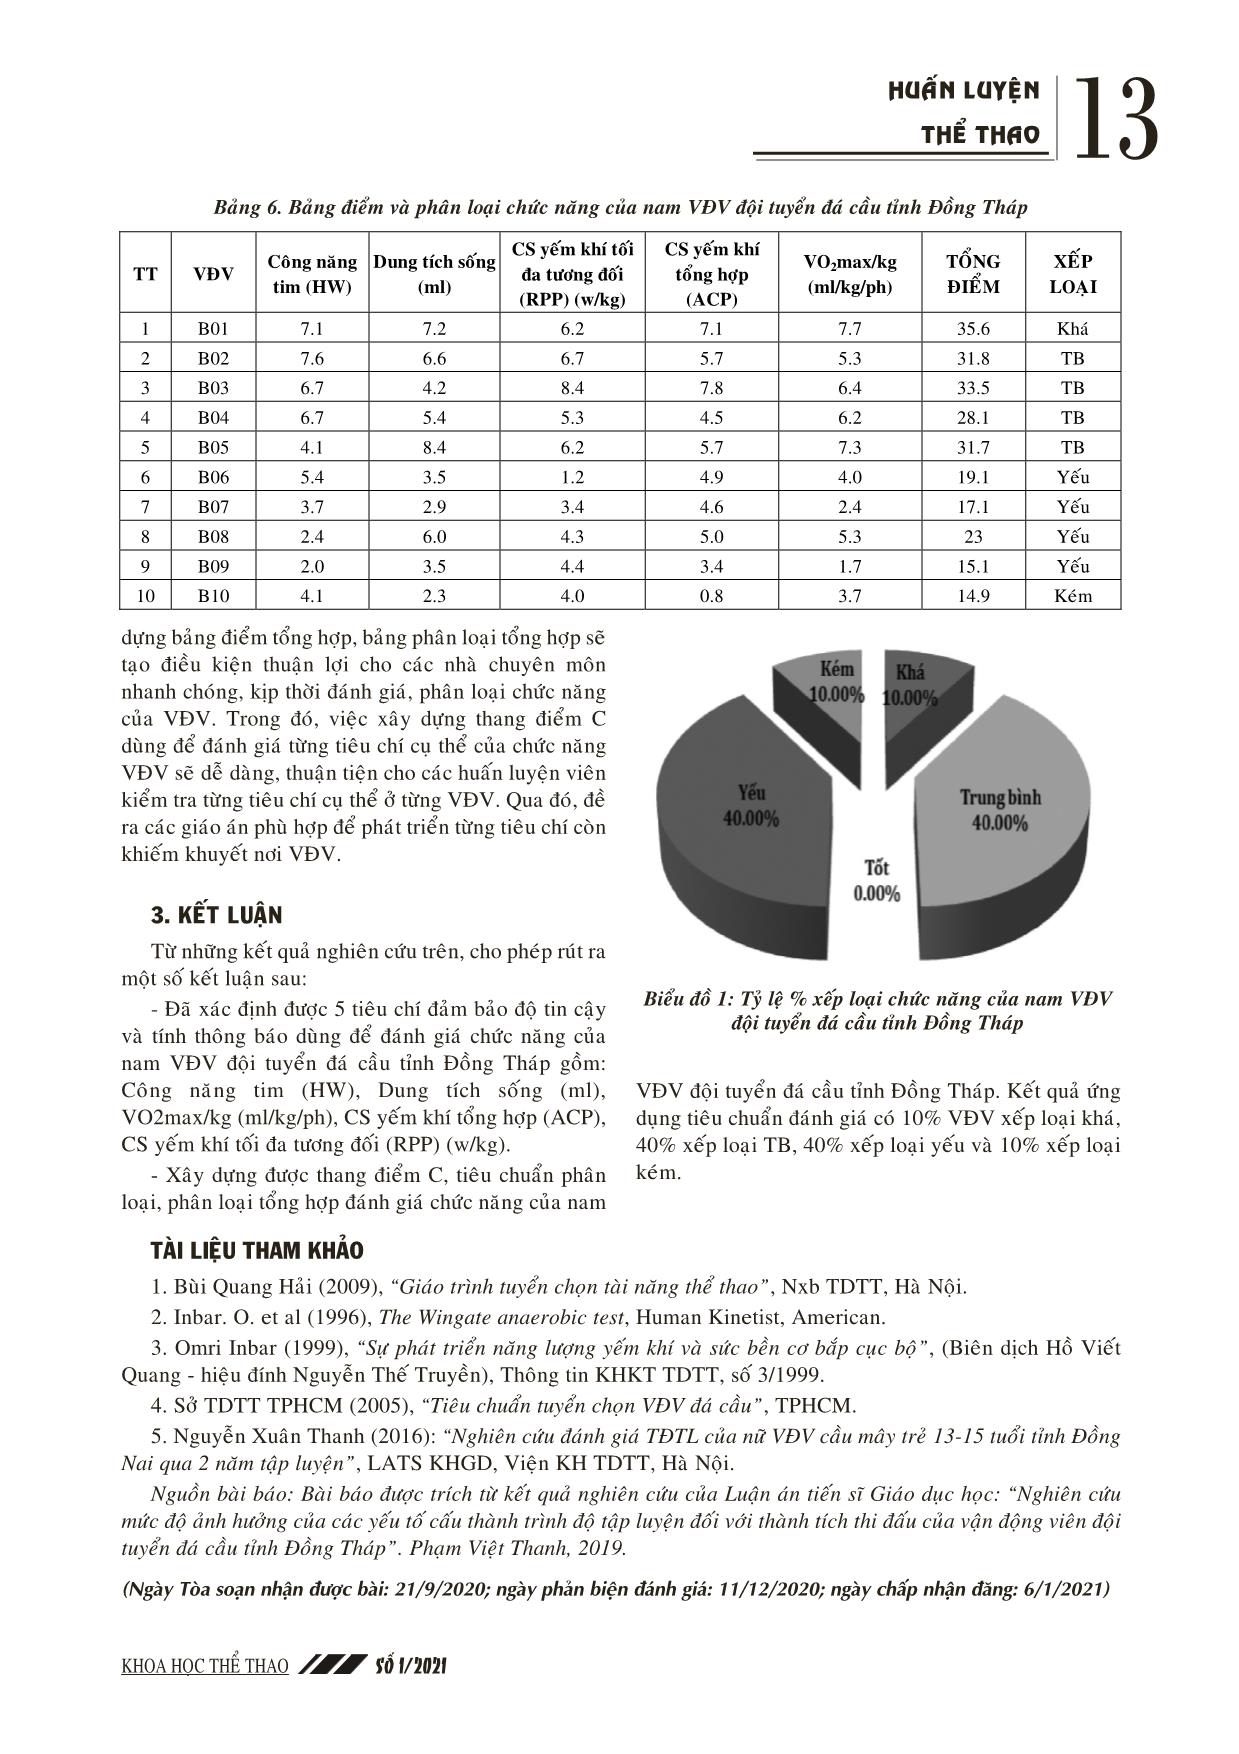 Xây dựng tiêu chuẩn đánh giá chức năng cho nam vận động viên đội tuyển đá cầu tỉnh Đồng Tháp trang 5